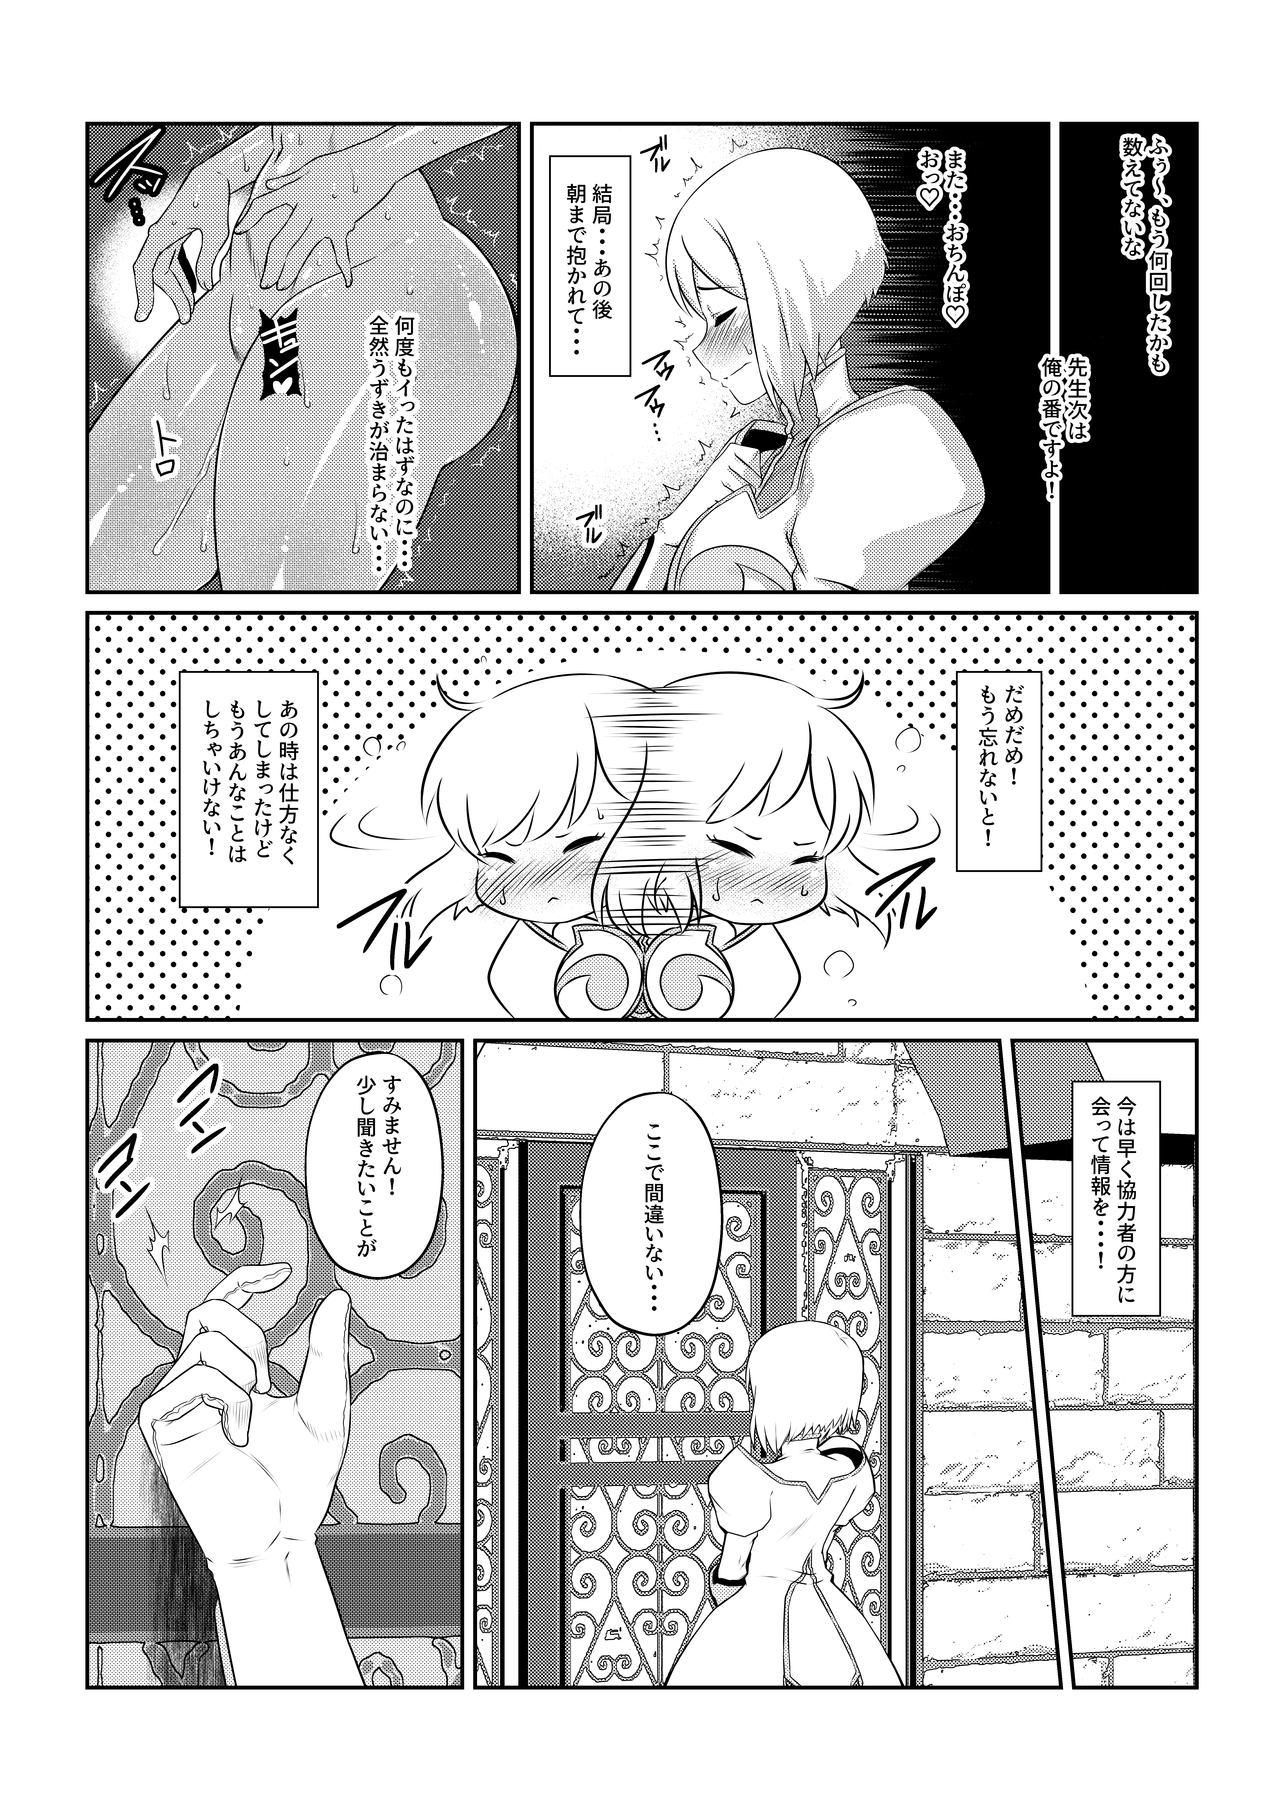 Skinny Gekka Midarezaki - Tales of vesperia Vergon - Page 8